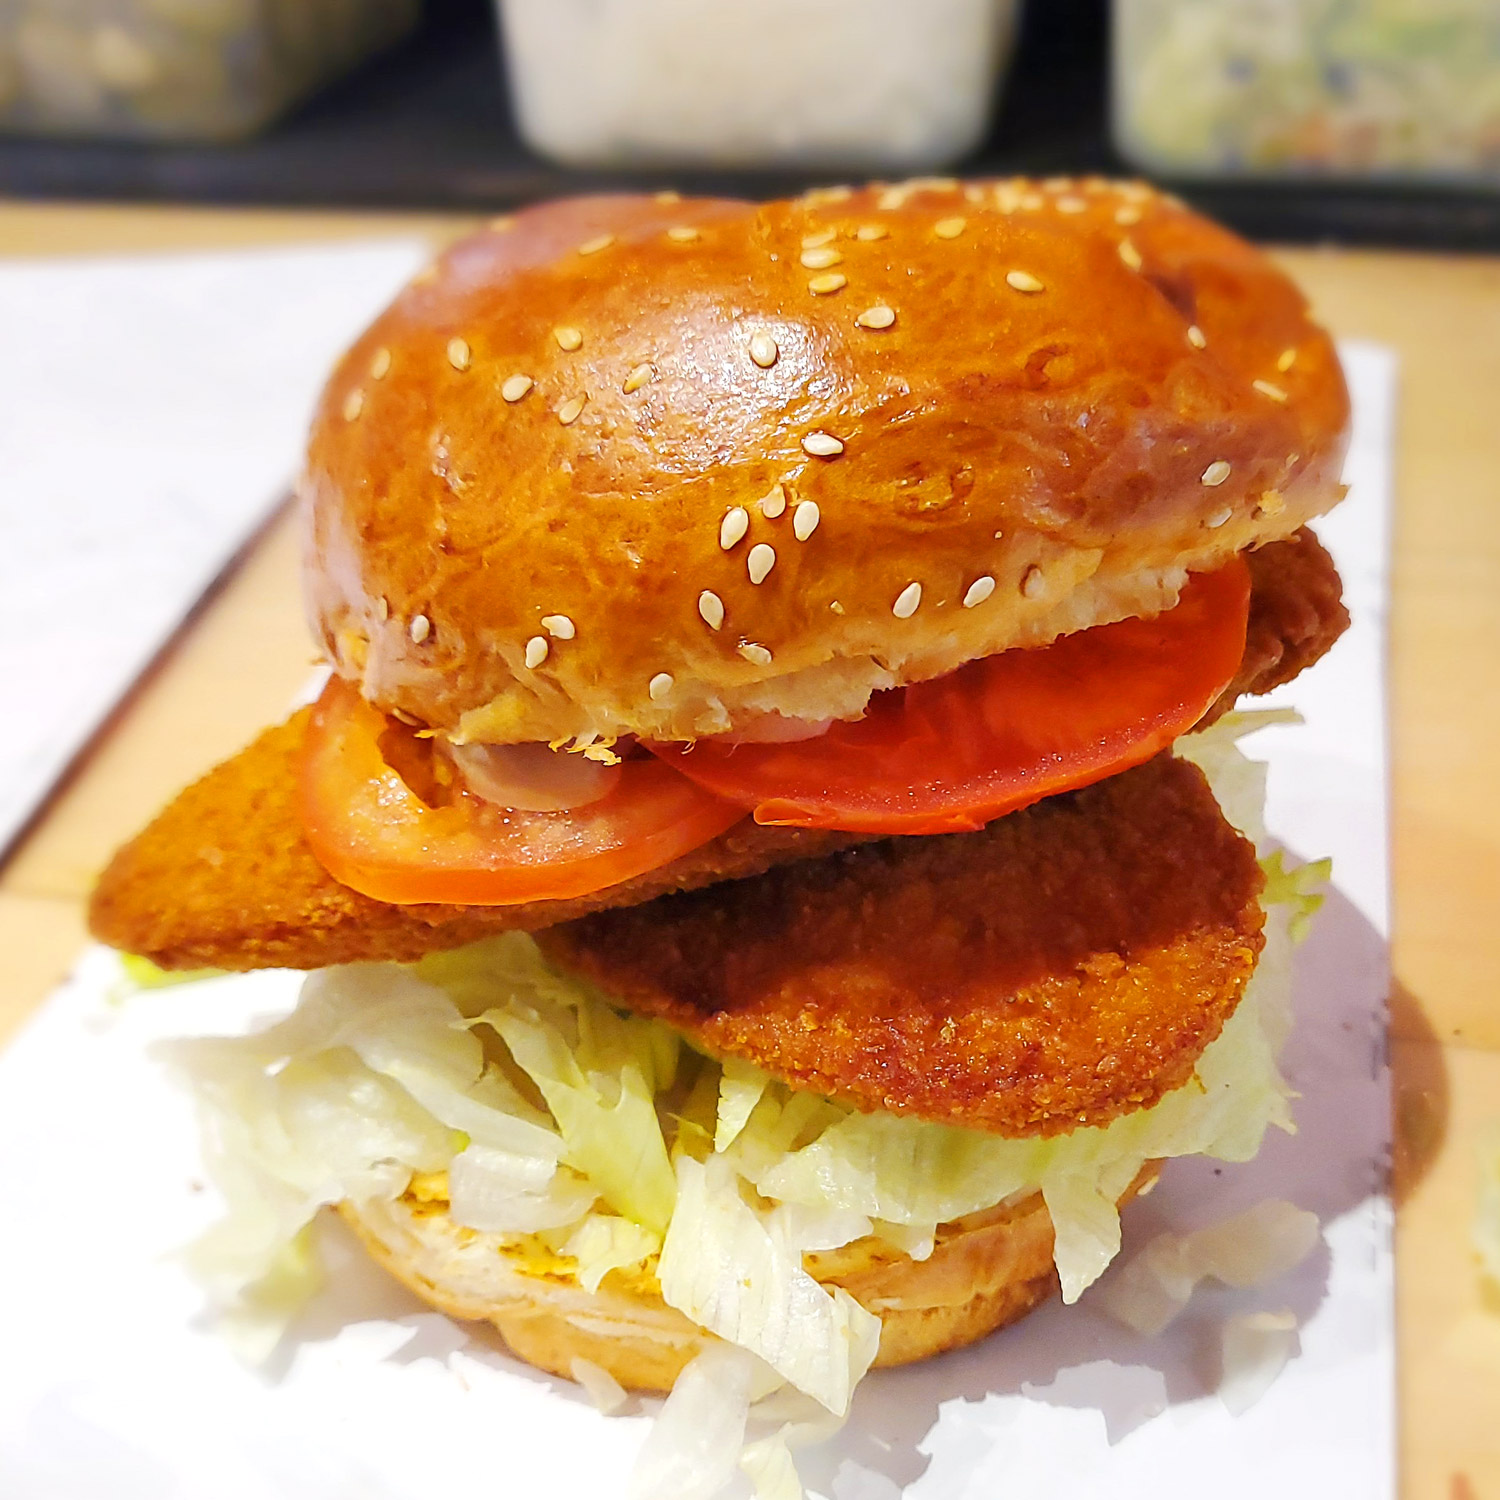 fish-burger